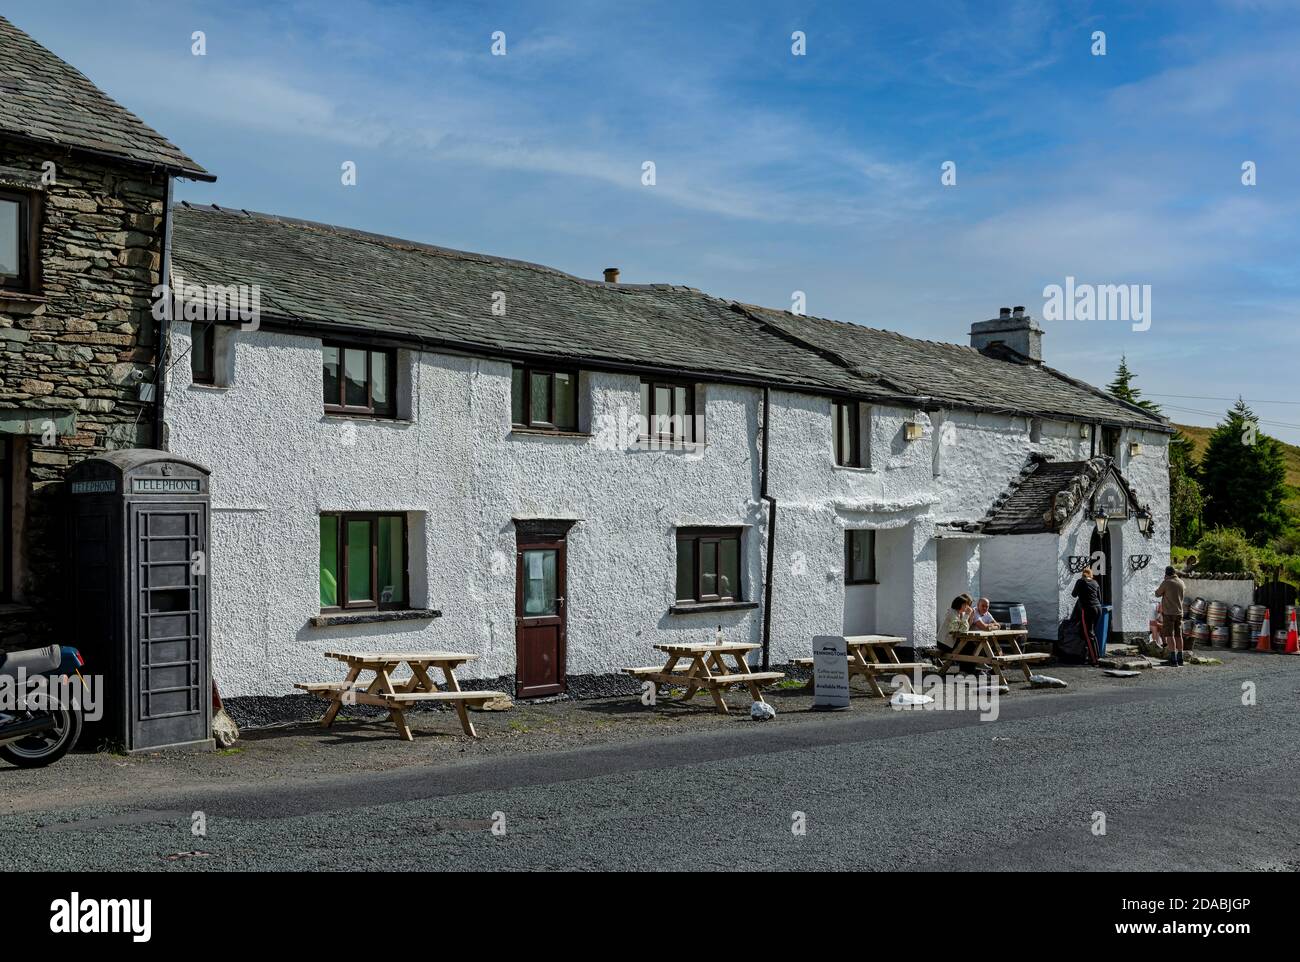 The Kirkstone Pass Inn Pub im Sommer Lake District Cumbria England Vereinigtes Königreich GB Großbritannien Stockfoto